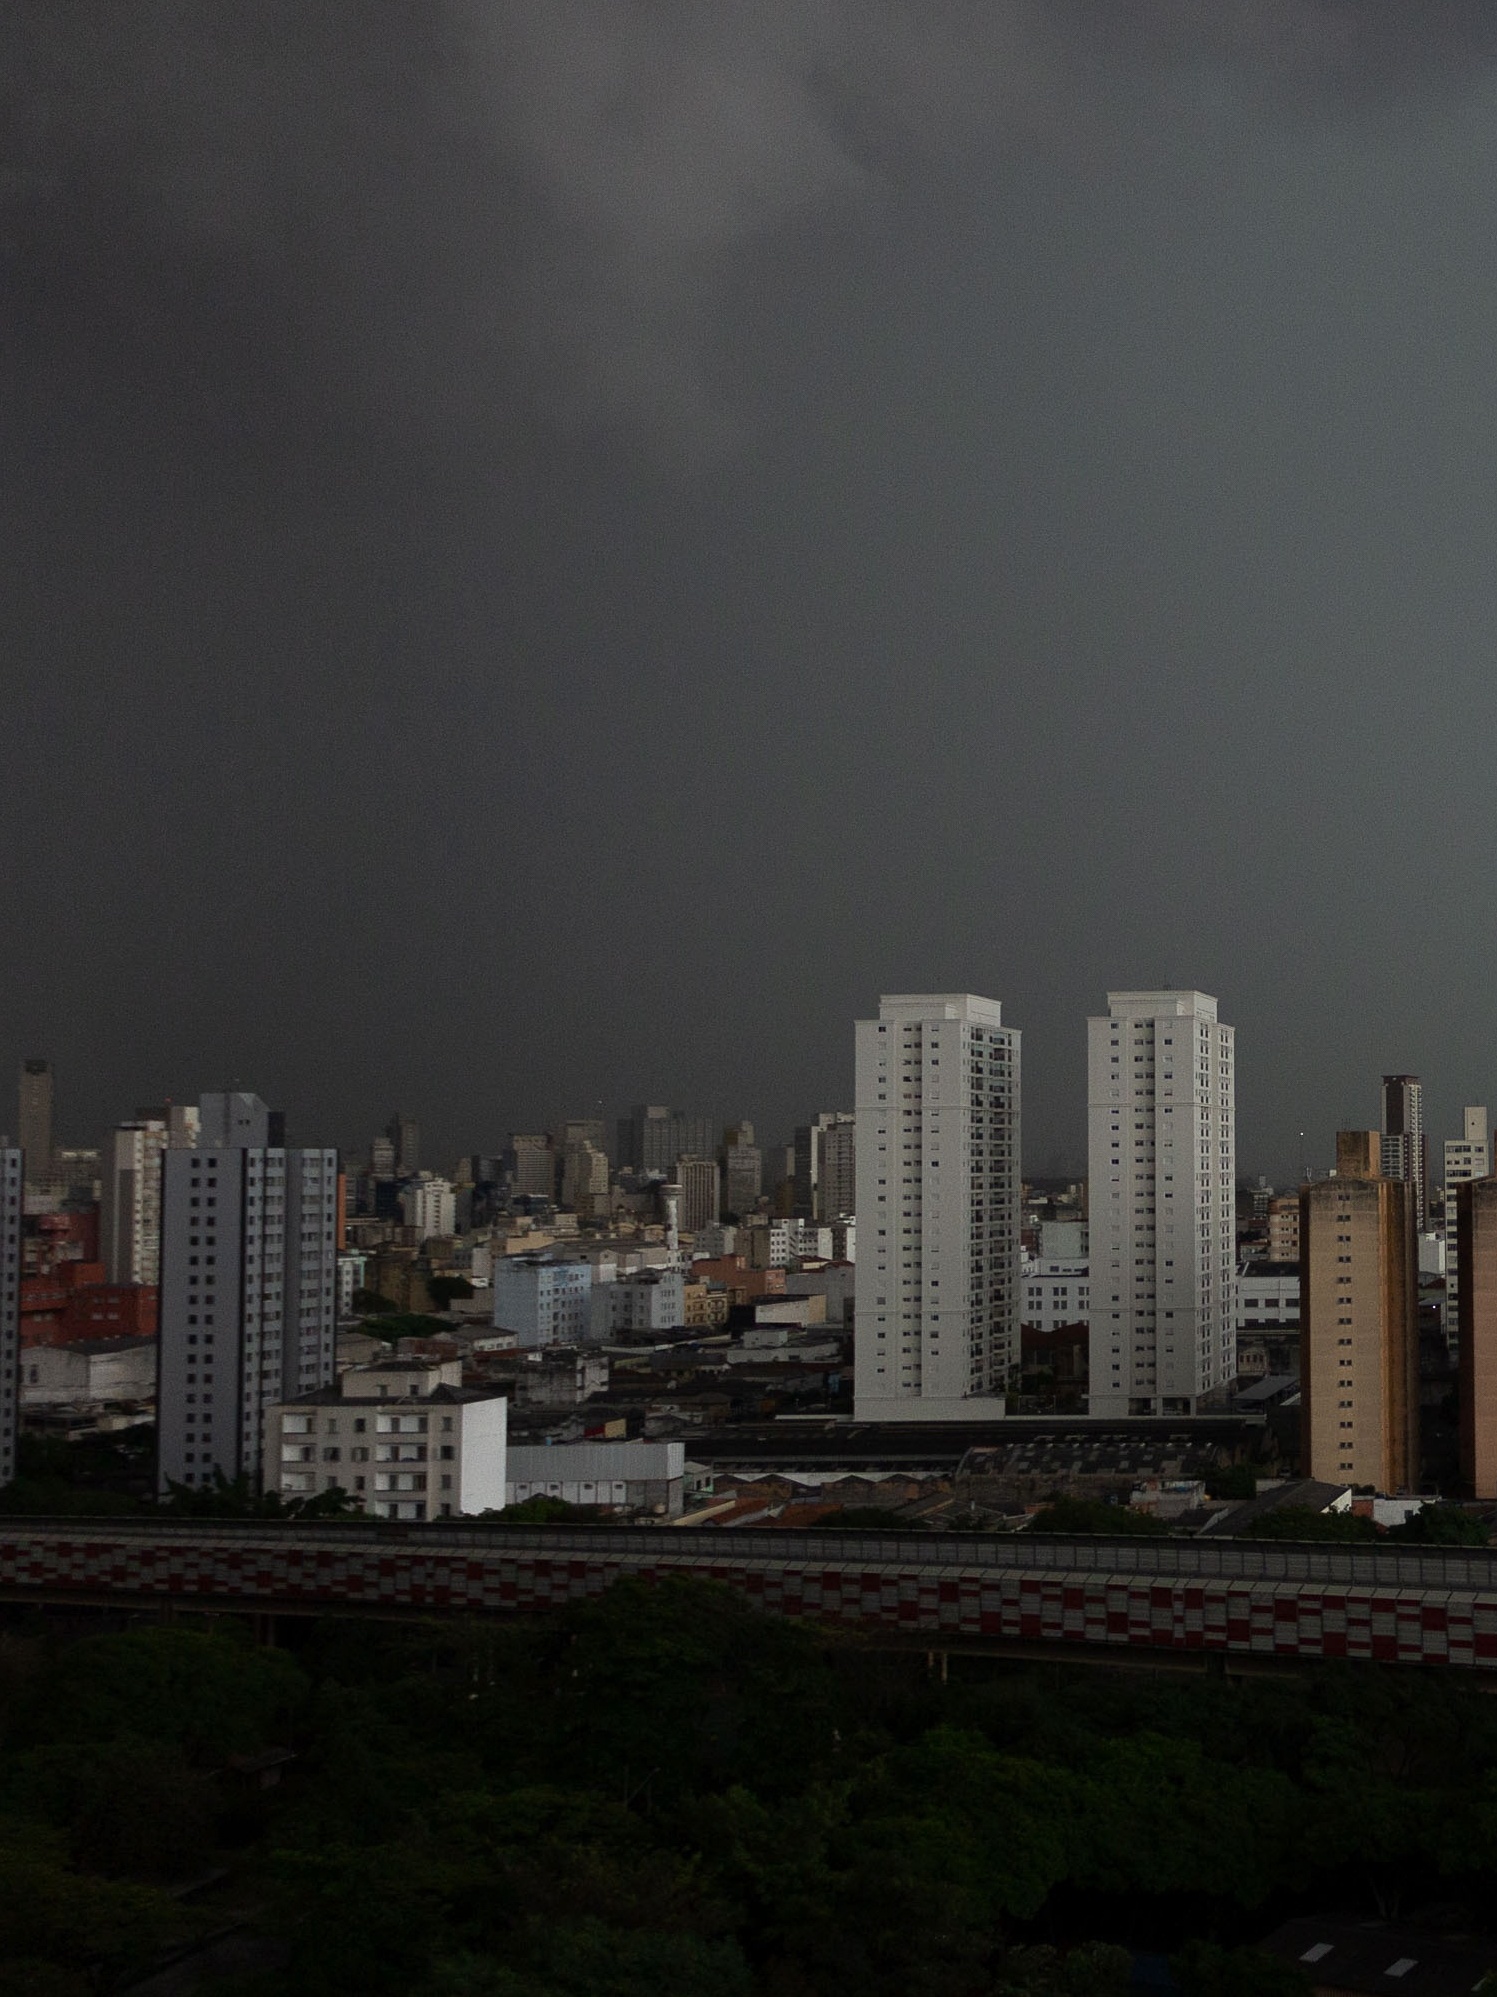 Sem luz há quase uma semana, população de municípios do RJ